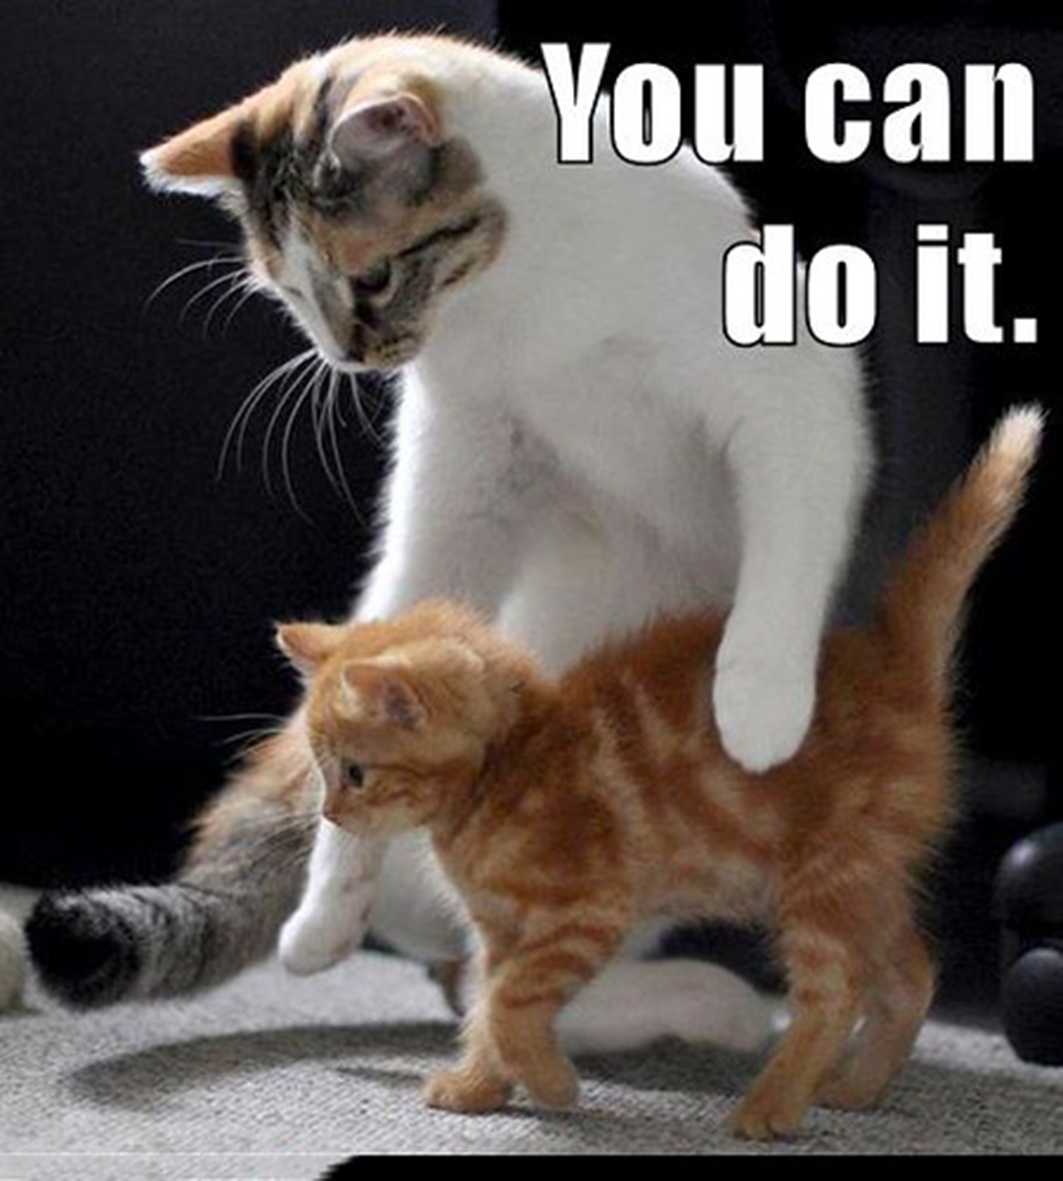 Can you do my back. You can do it кот. I can do it котенок. You can do it Cats cute. You can do it meme.